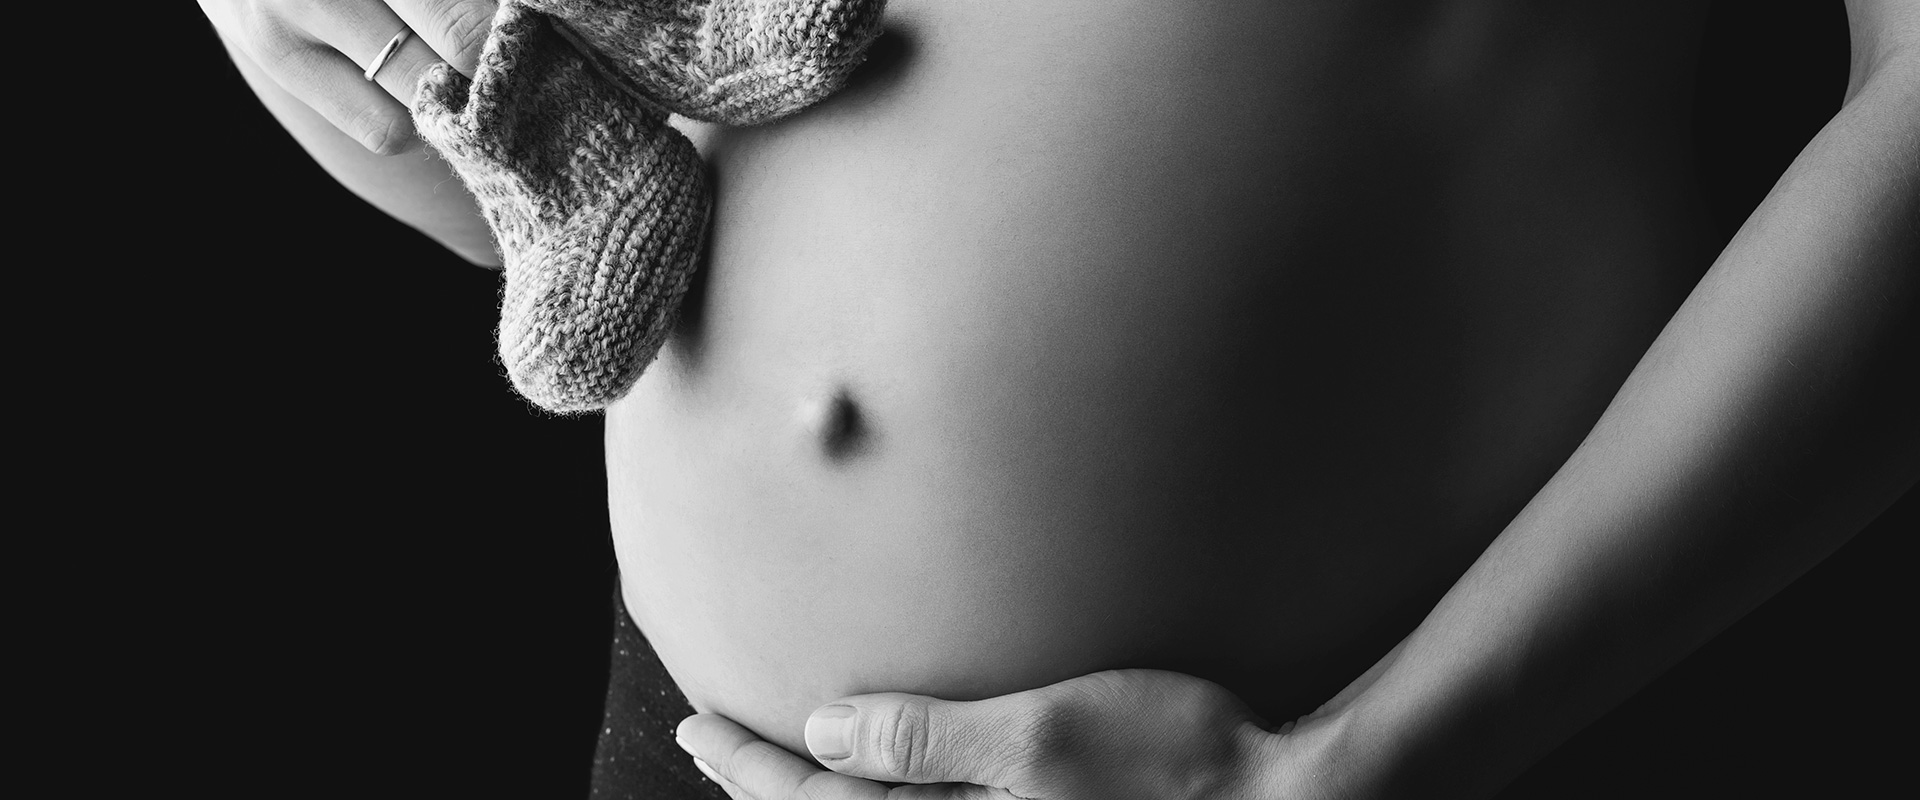 Fotoshooting für Baby und Schwangerschaft